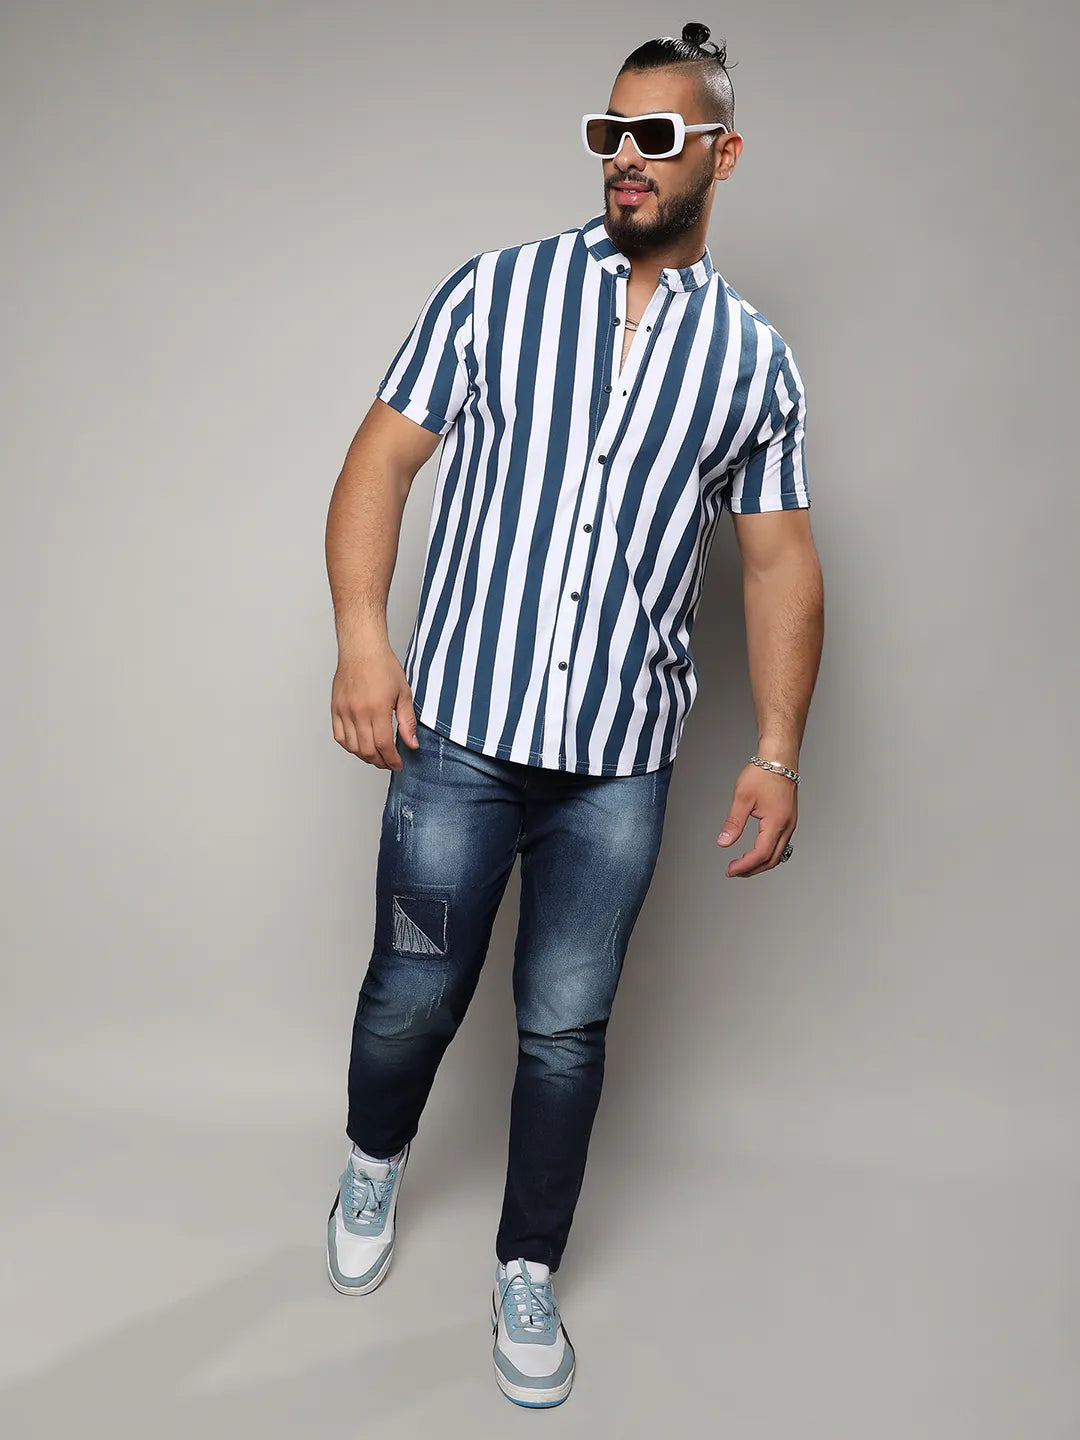 Striped Stylish Casual Shirt